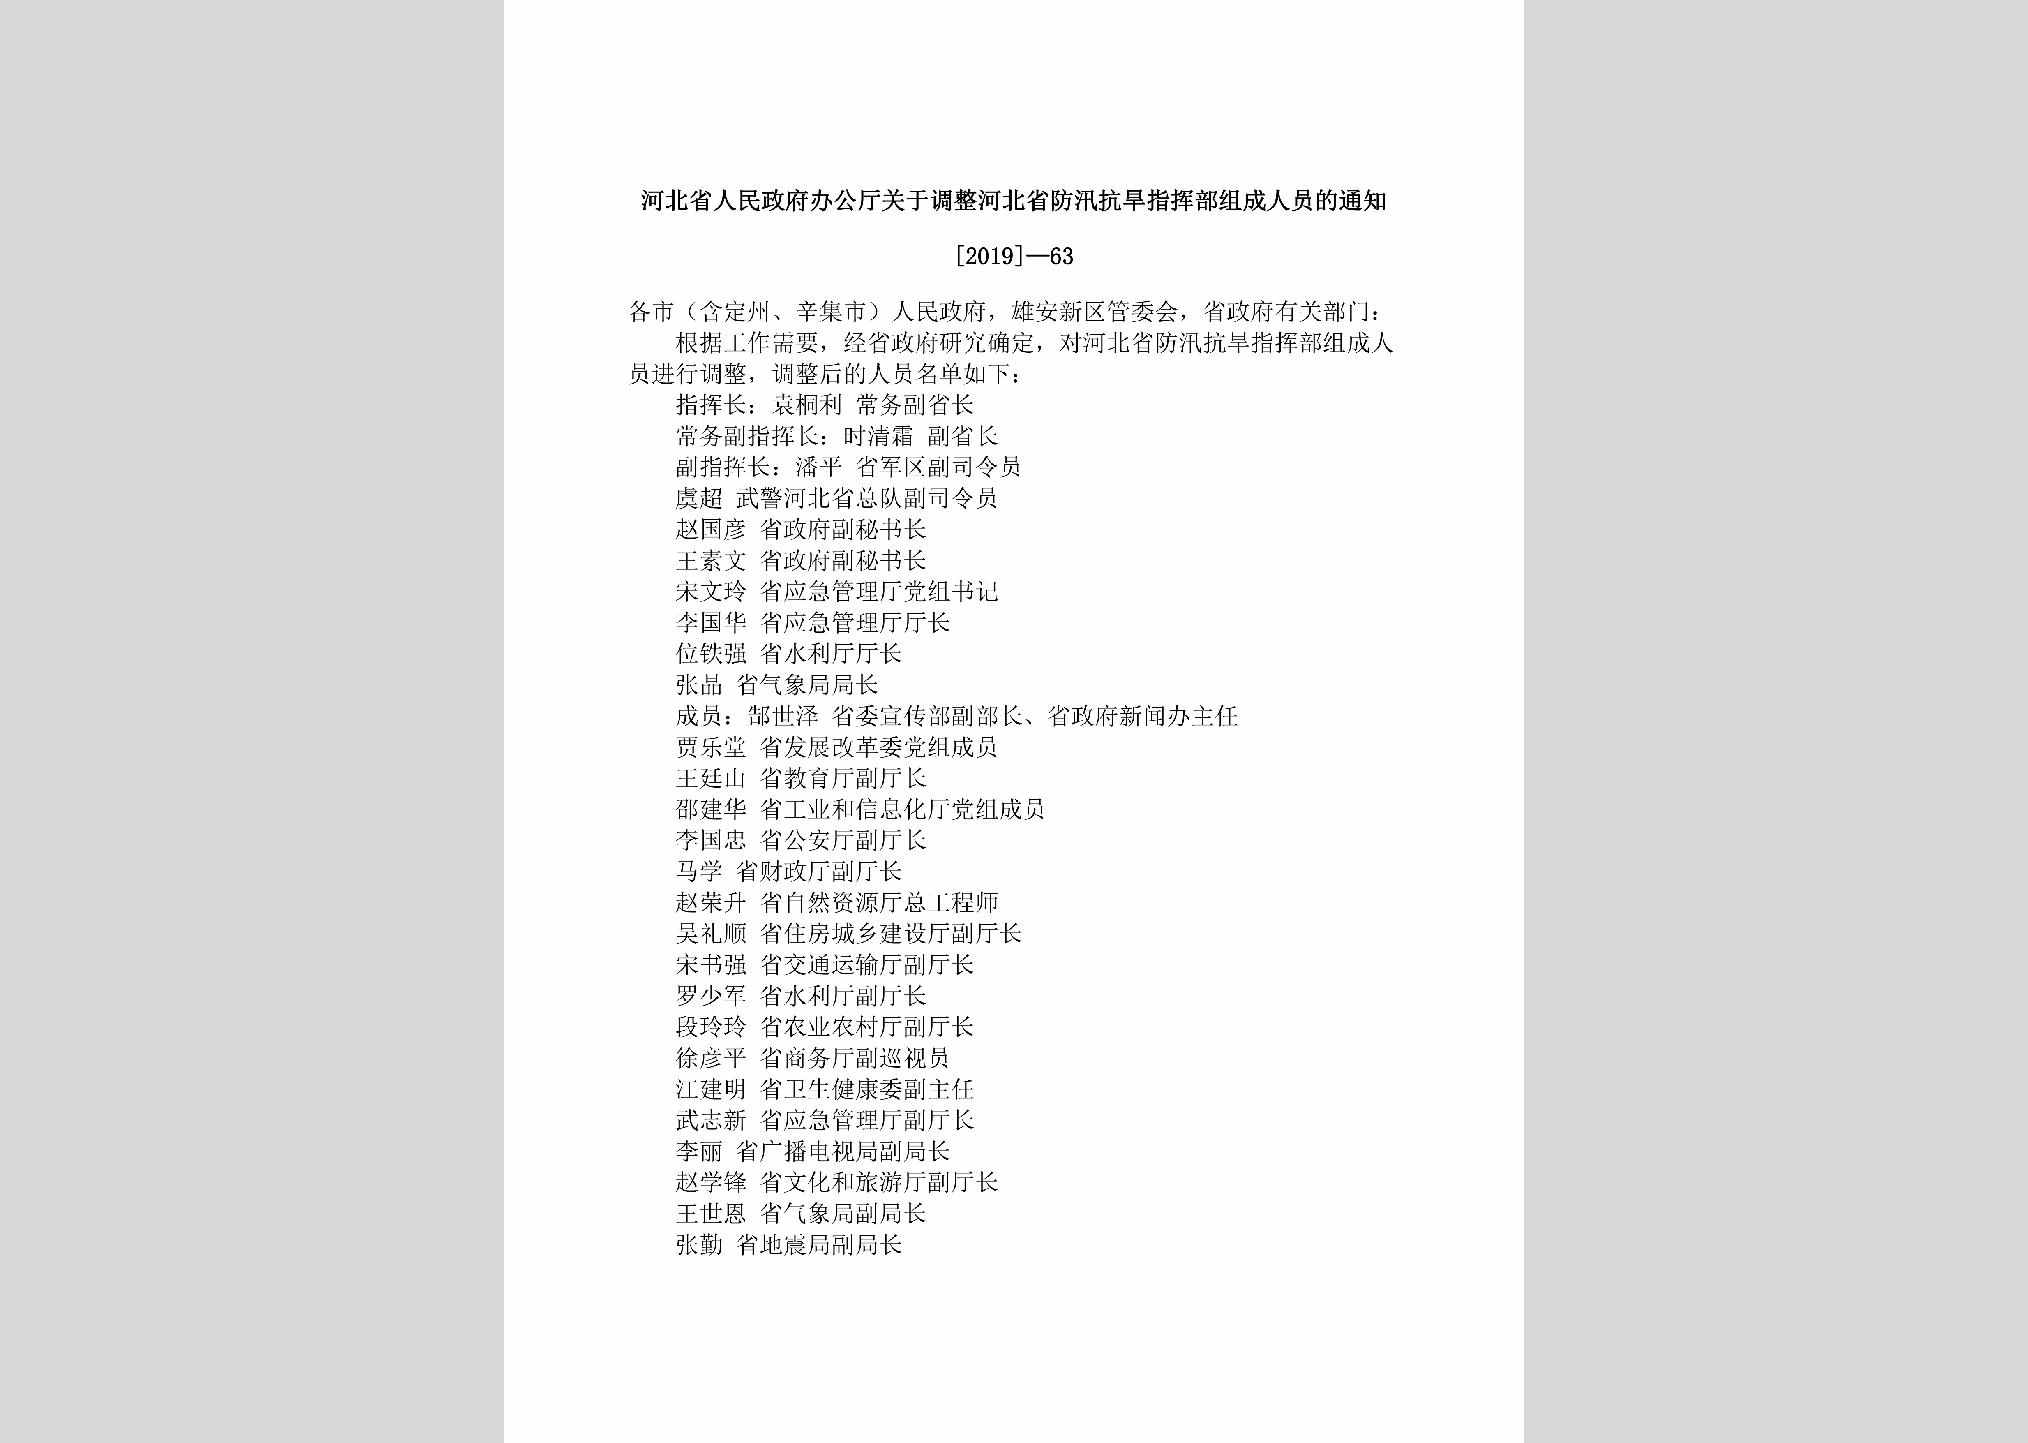 [2019]-63：河北省人民政府办公厅关于调整河北省防汛抗旱指挥部组成人员的通知